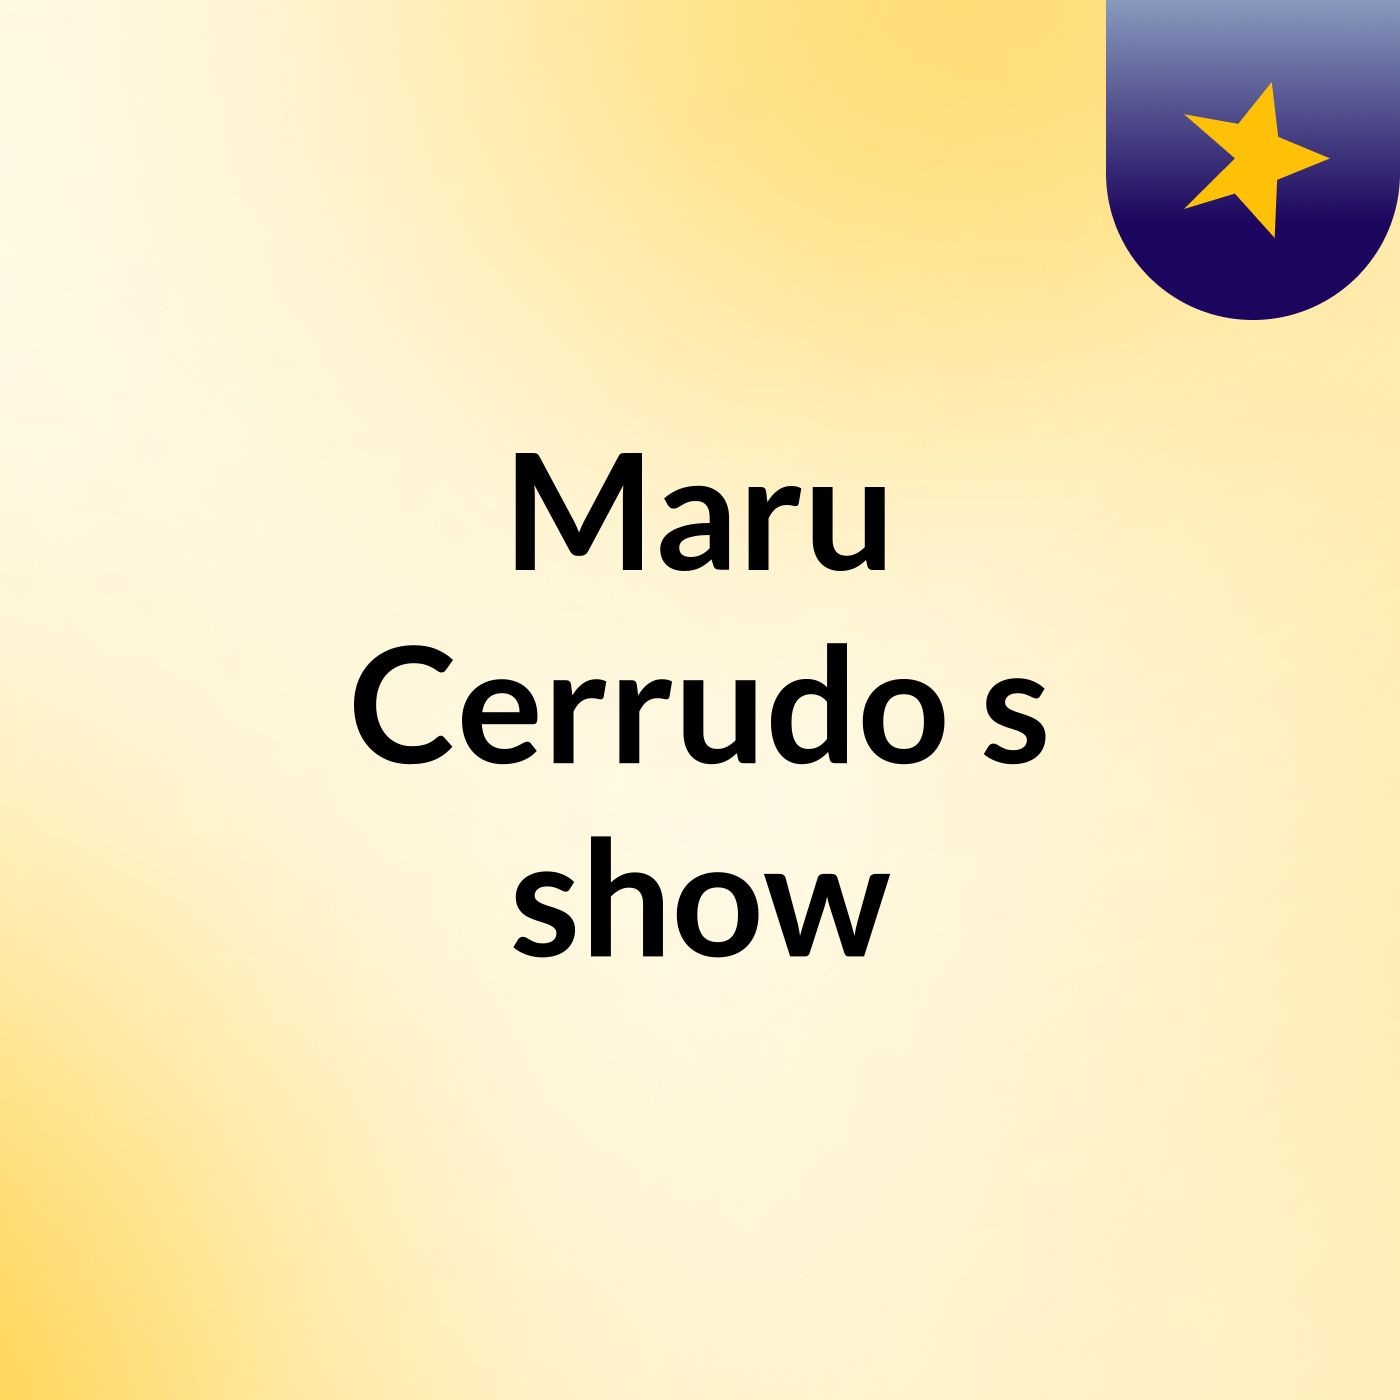 Maru Cerrudo's show